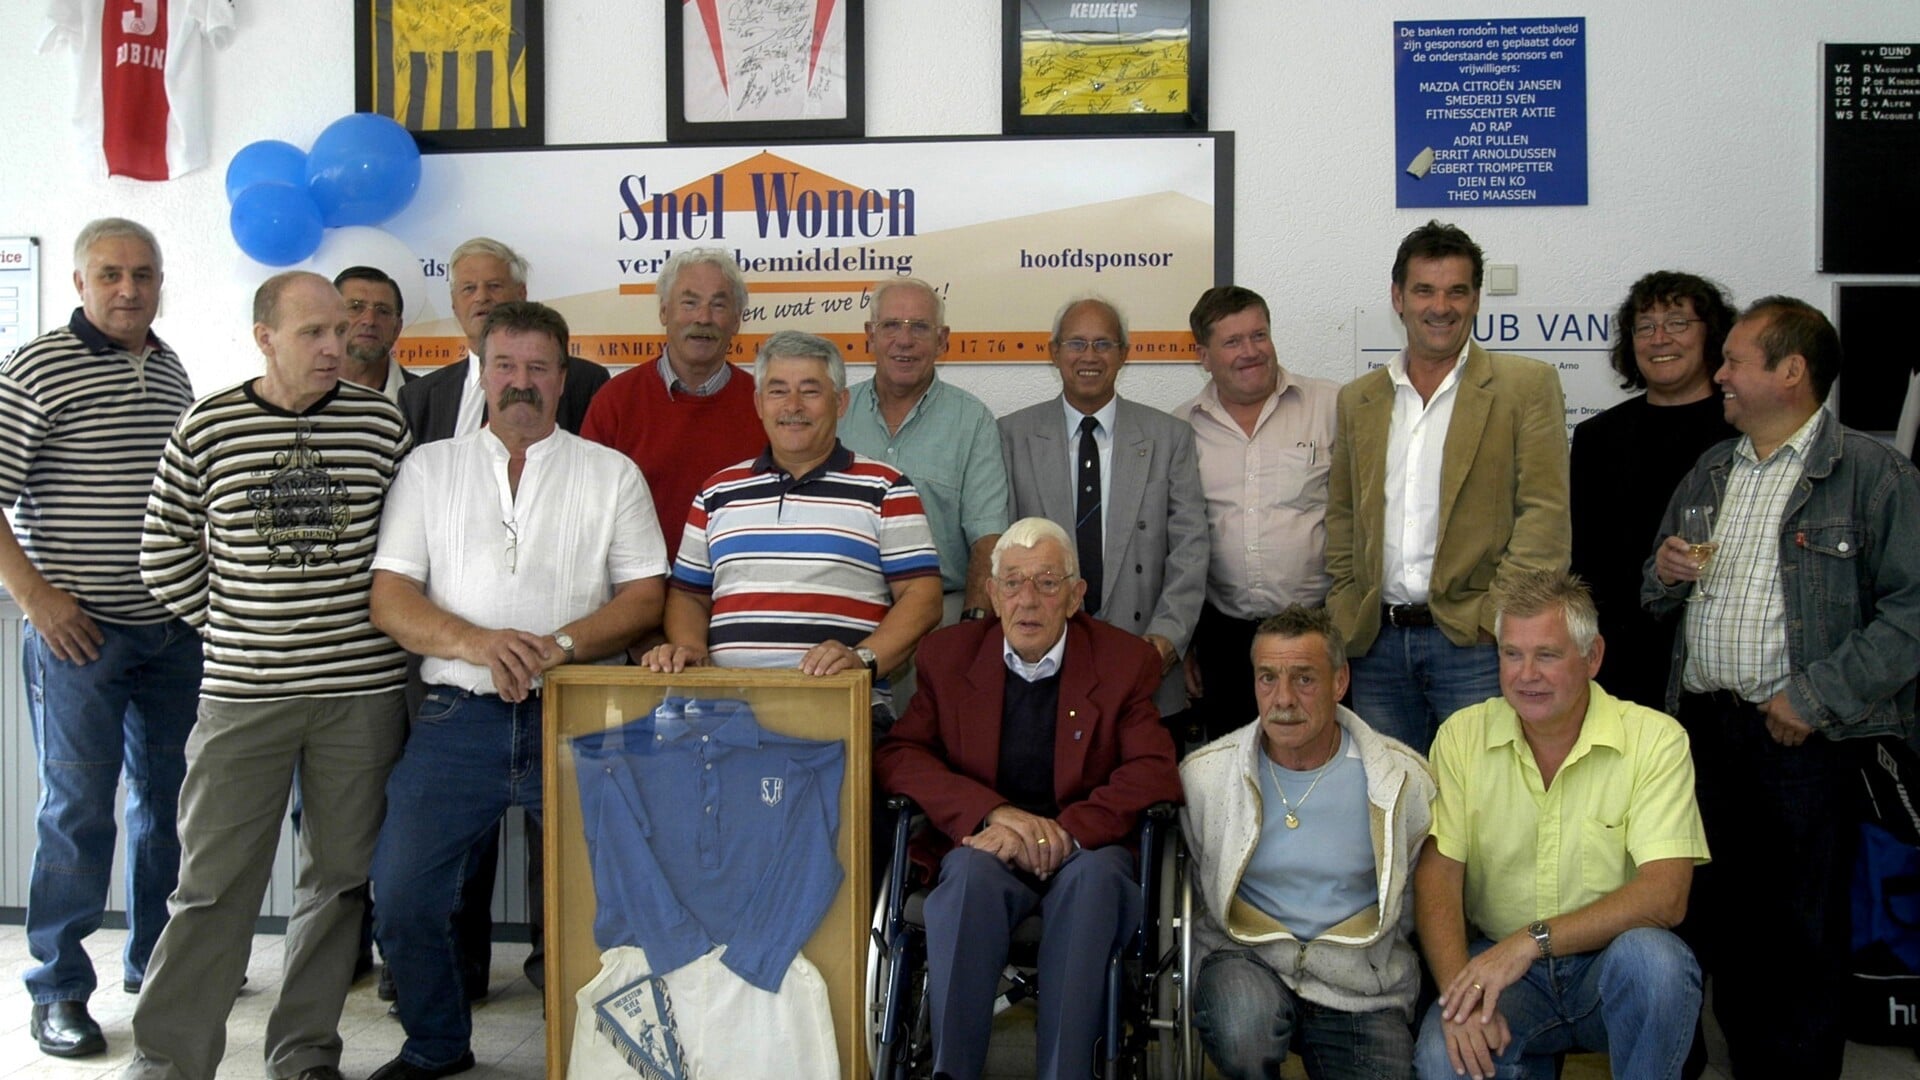 De mannen van het eerste uur vierden in 2008 het 60-jarig jubileum van Duno.